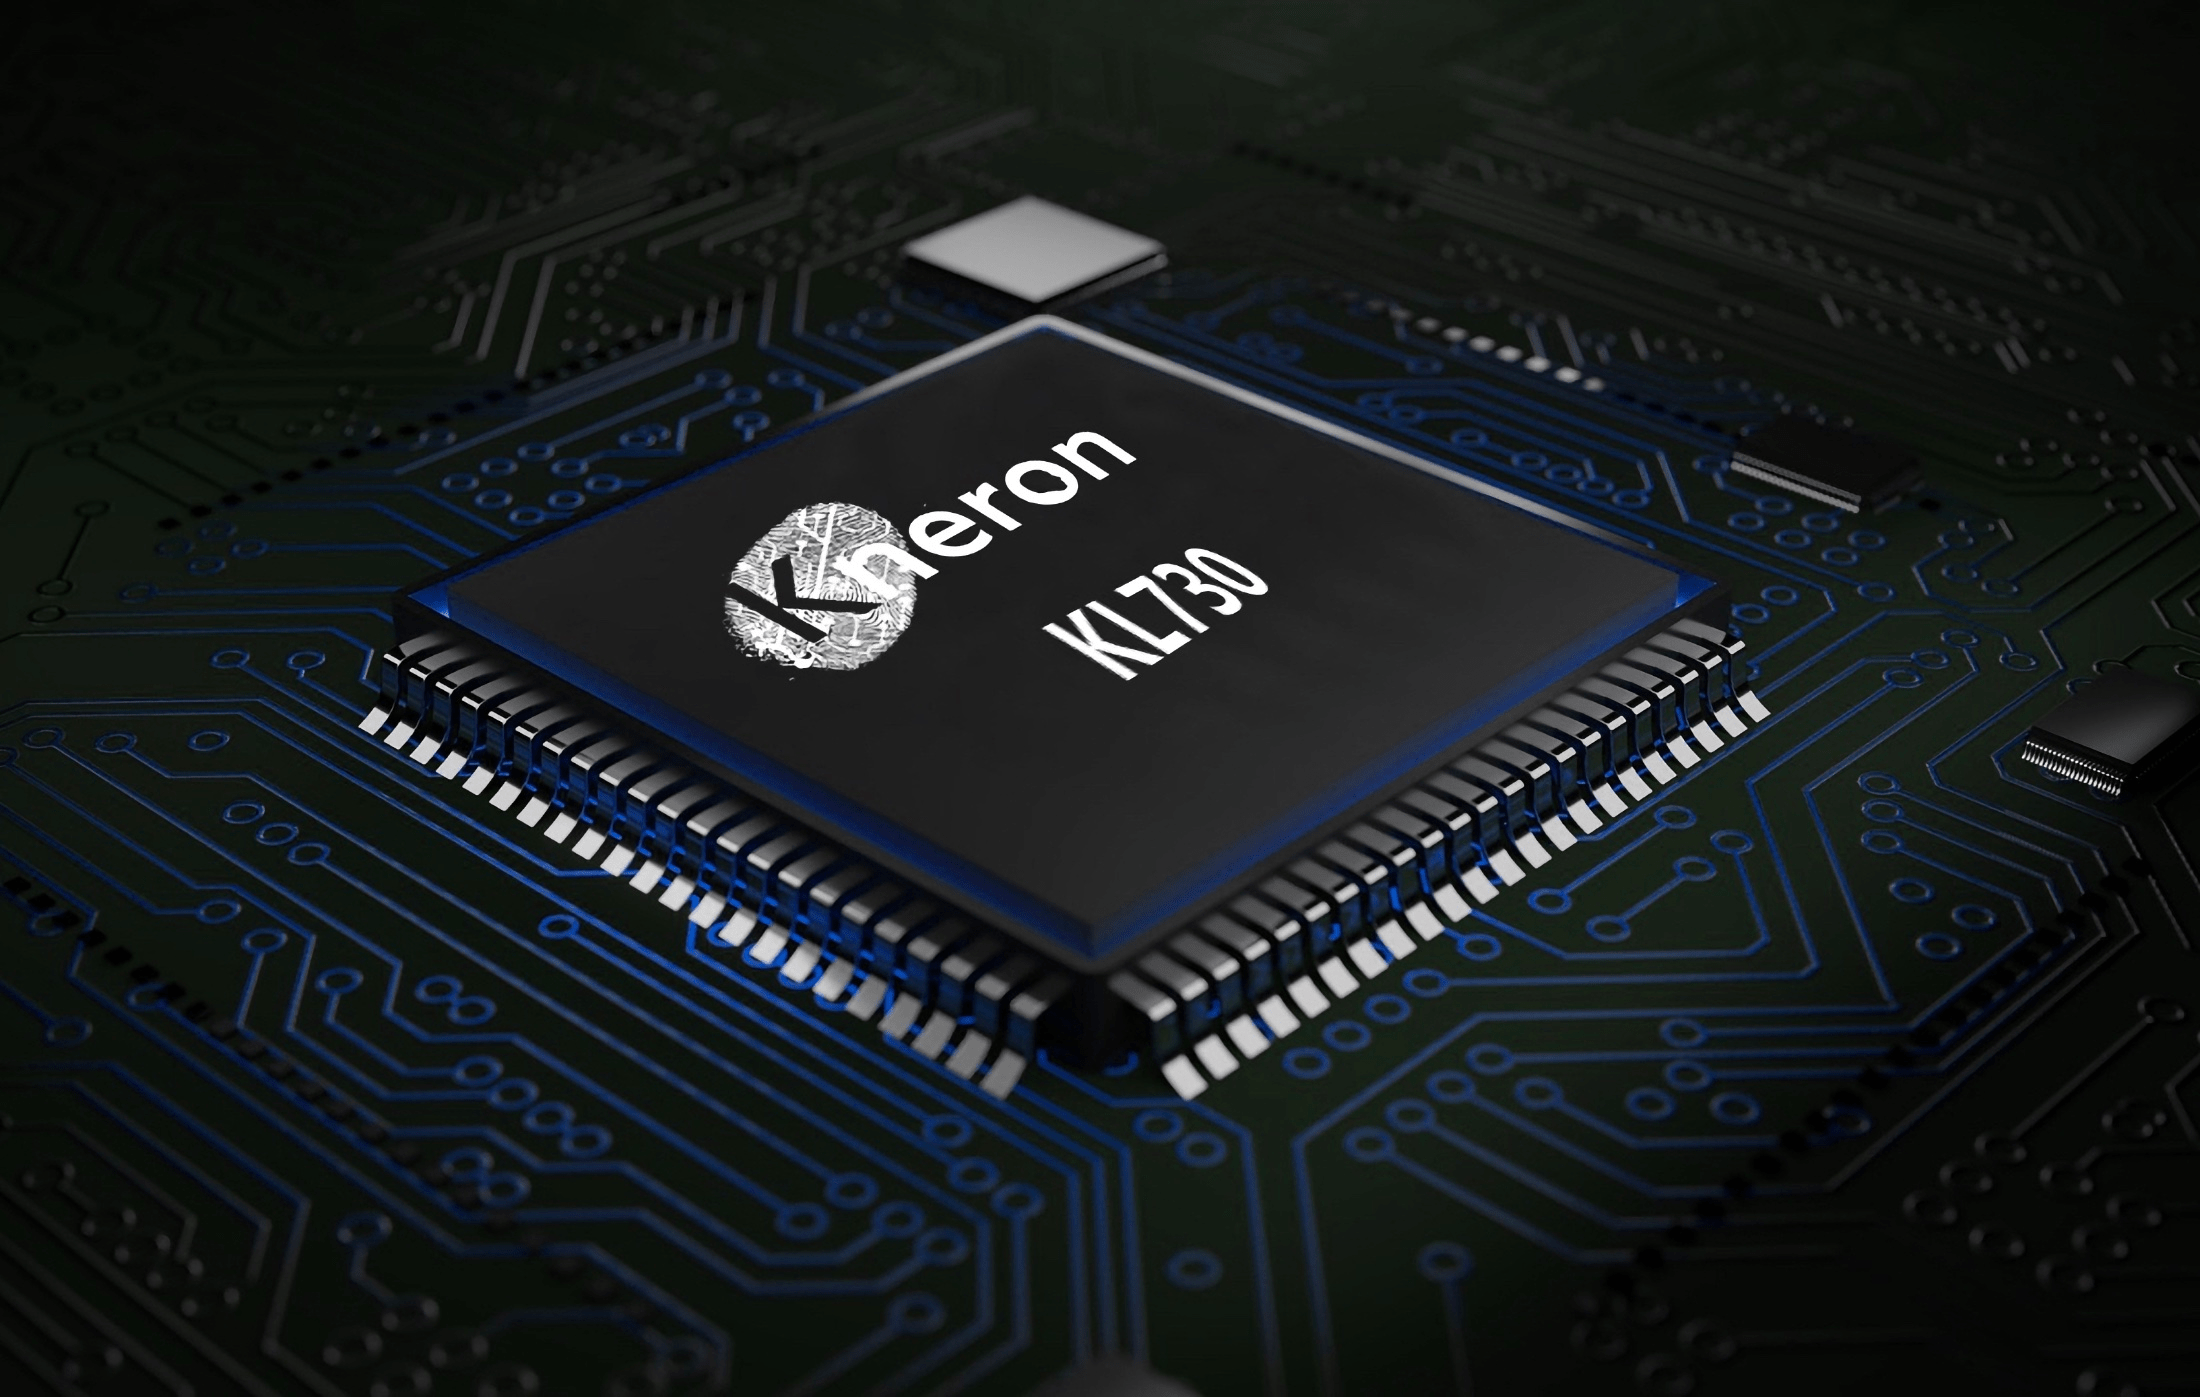 Foxconn, Alltek invest in US-based AI startup Kneron's $49m Series B+ round